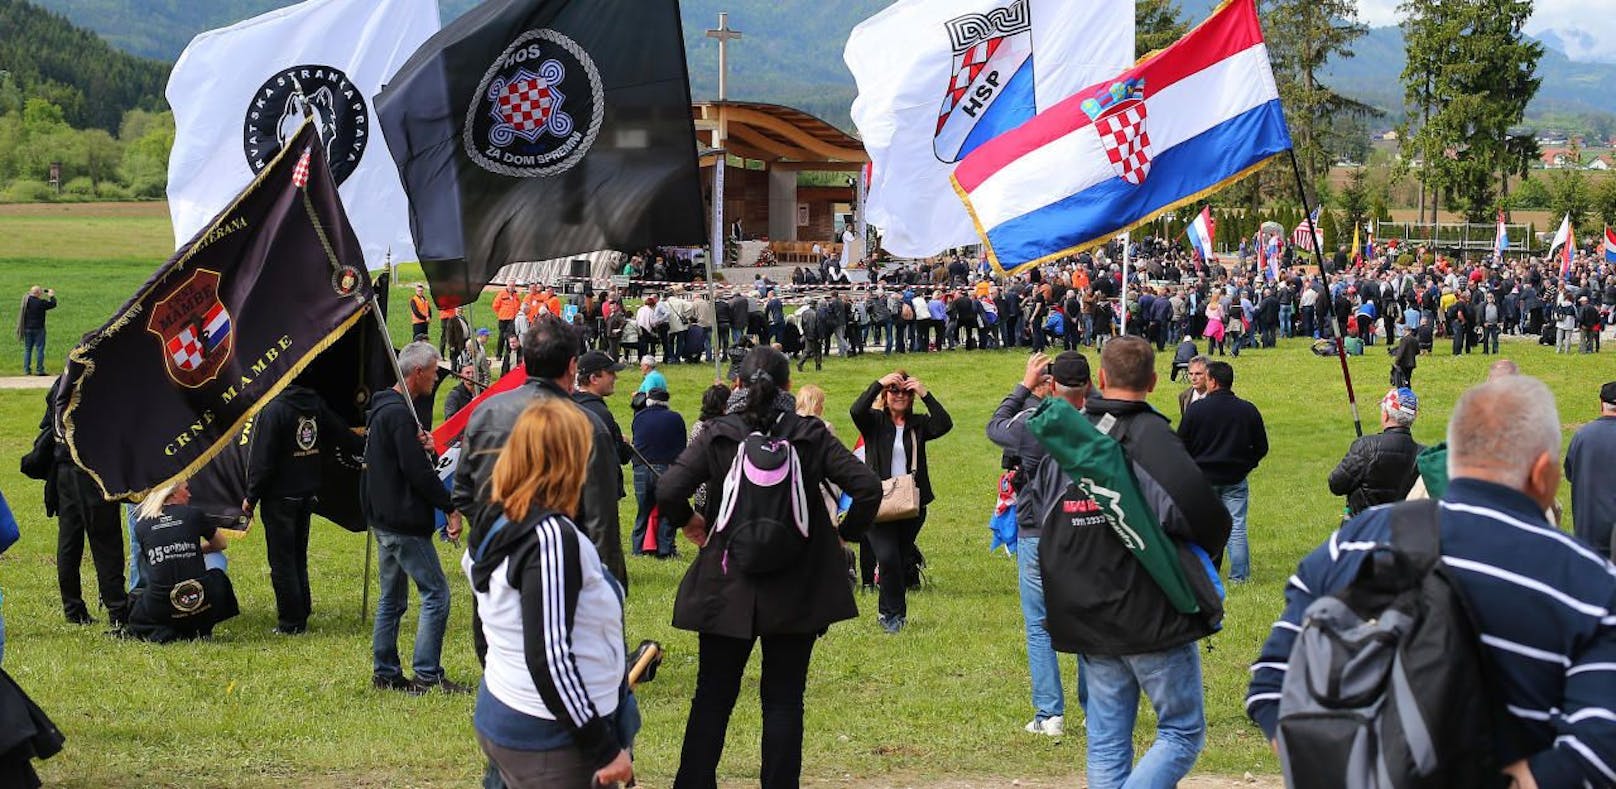 Sechs Kroaten nach Bleiburg-Treff in U-Haft